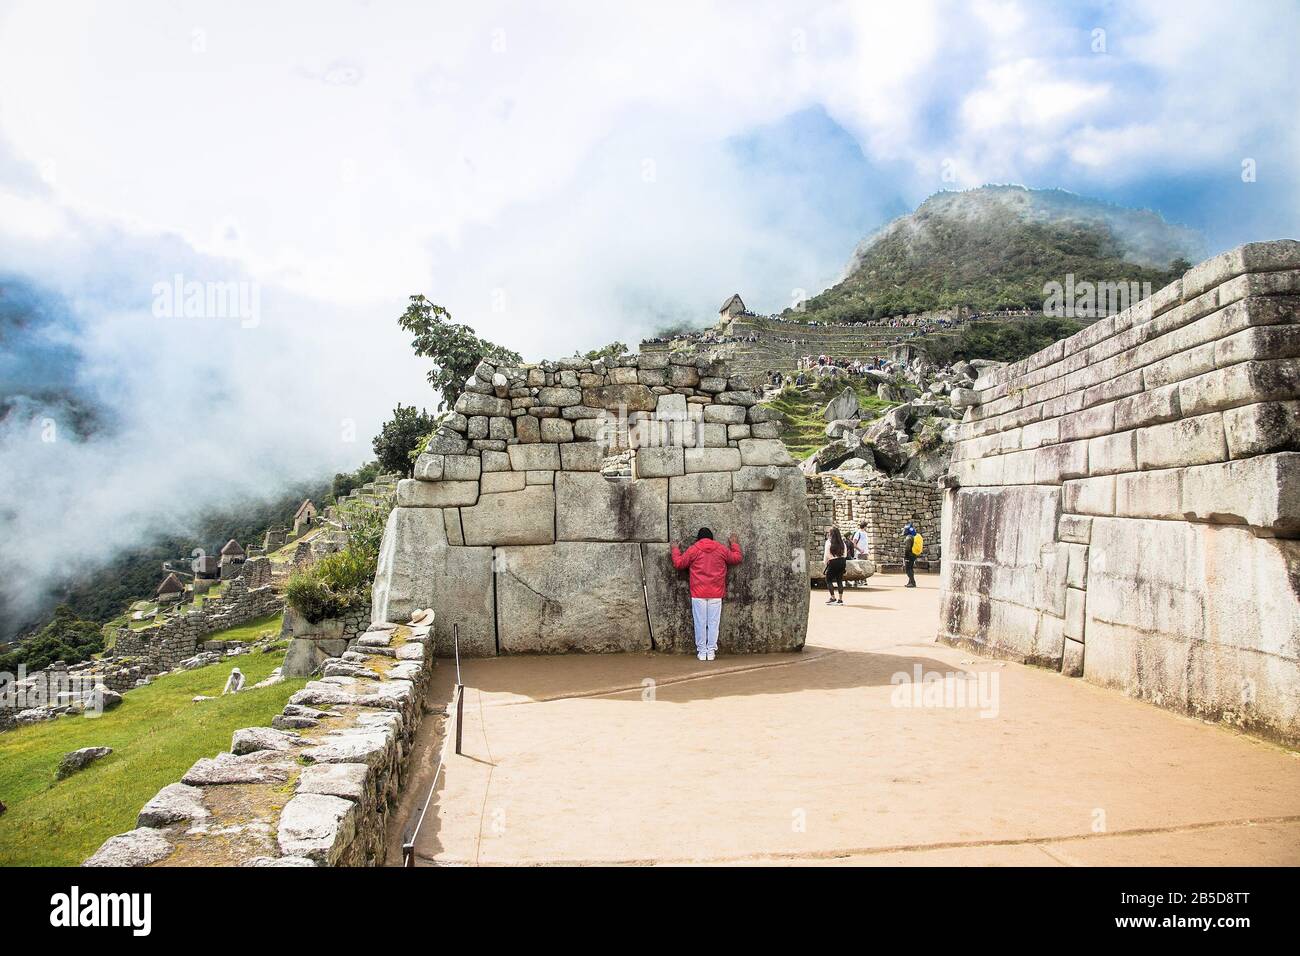 Machu Picchu Pueblo, Peru - 7. Januar 2019: Unglaubliche Inka-Mauer in der Antiken Stadt Machu Picchu in Peru. Südamerika. Archäologische Stätte. Stockfoto